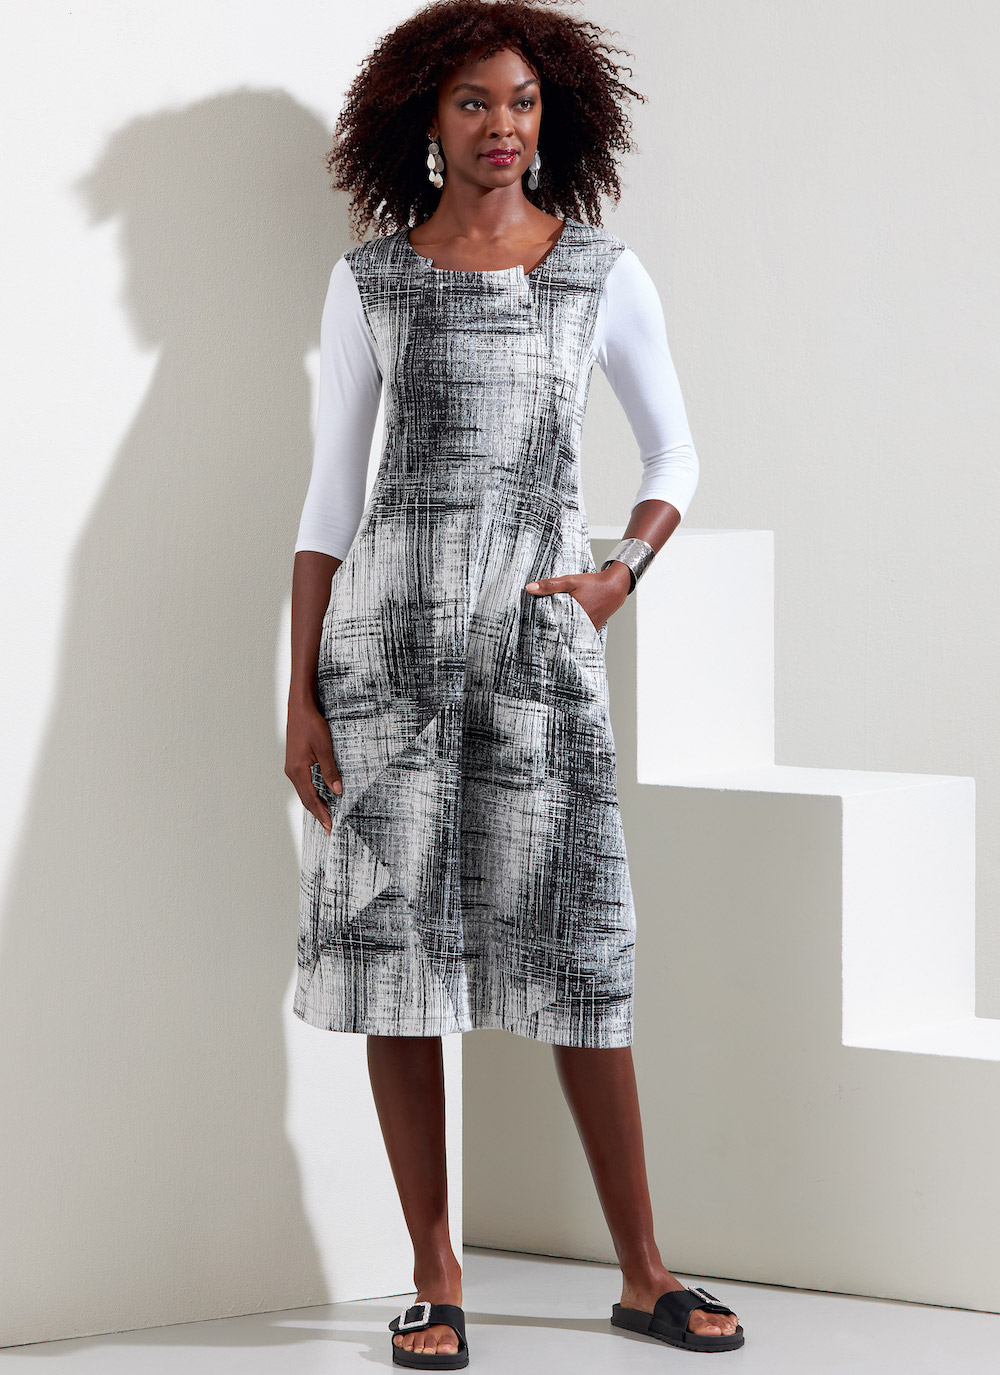 Vogue® Patterns Papierschnittmuster Damen - Pulloverkleid - V1860